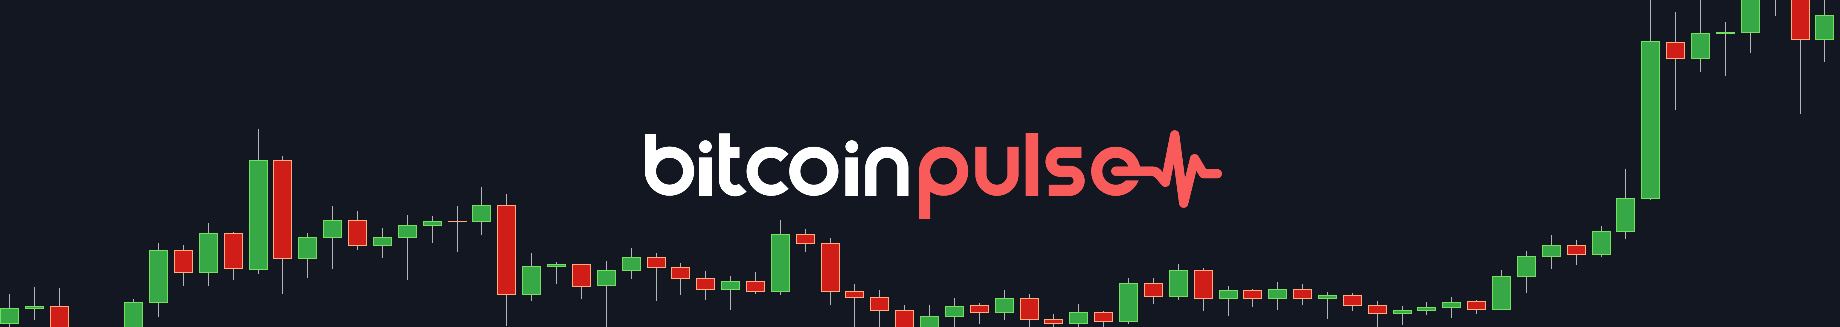 Bitcoin Pulse #121